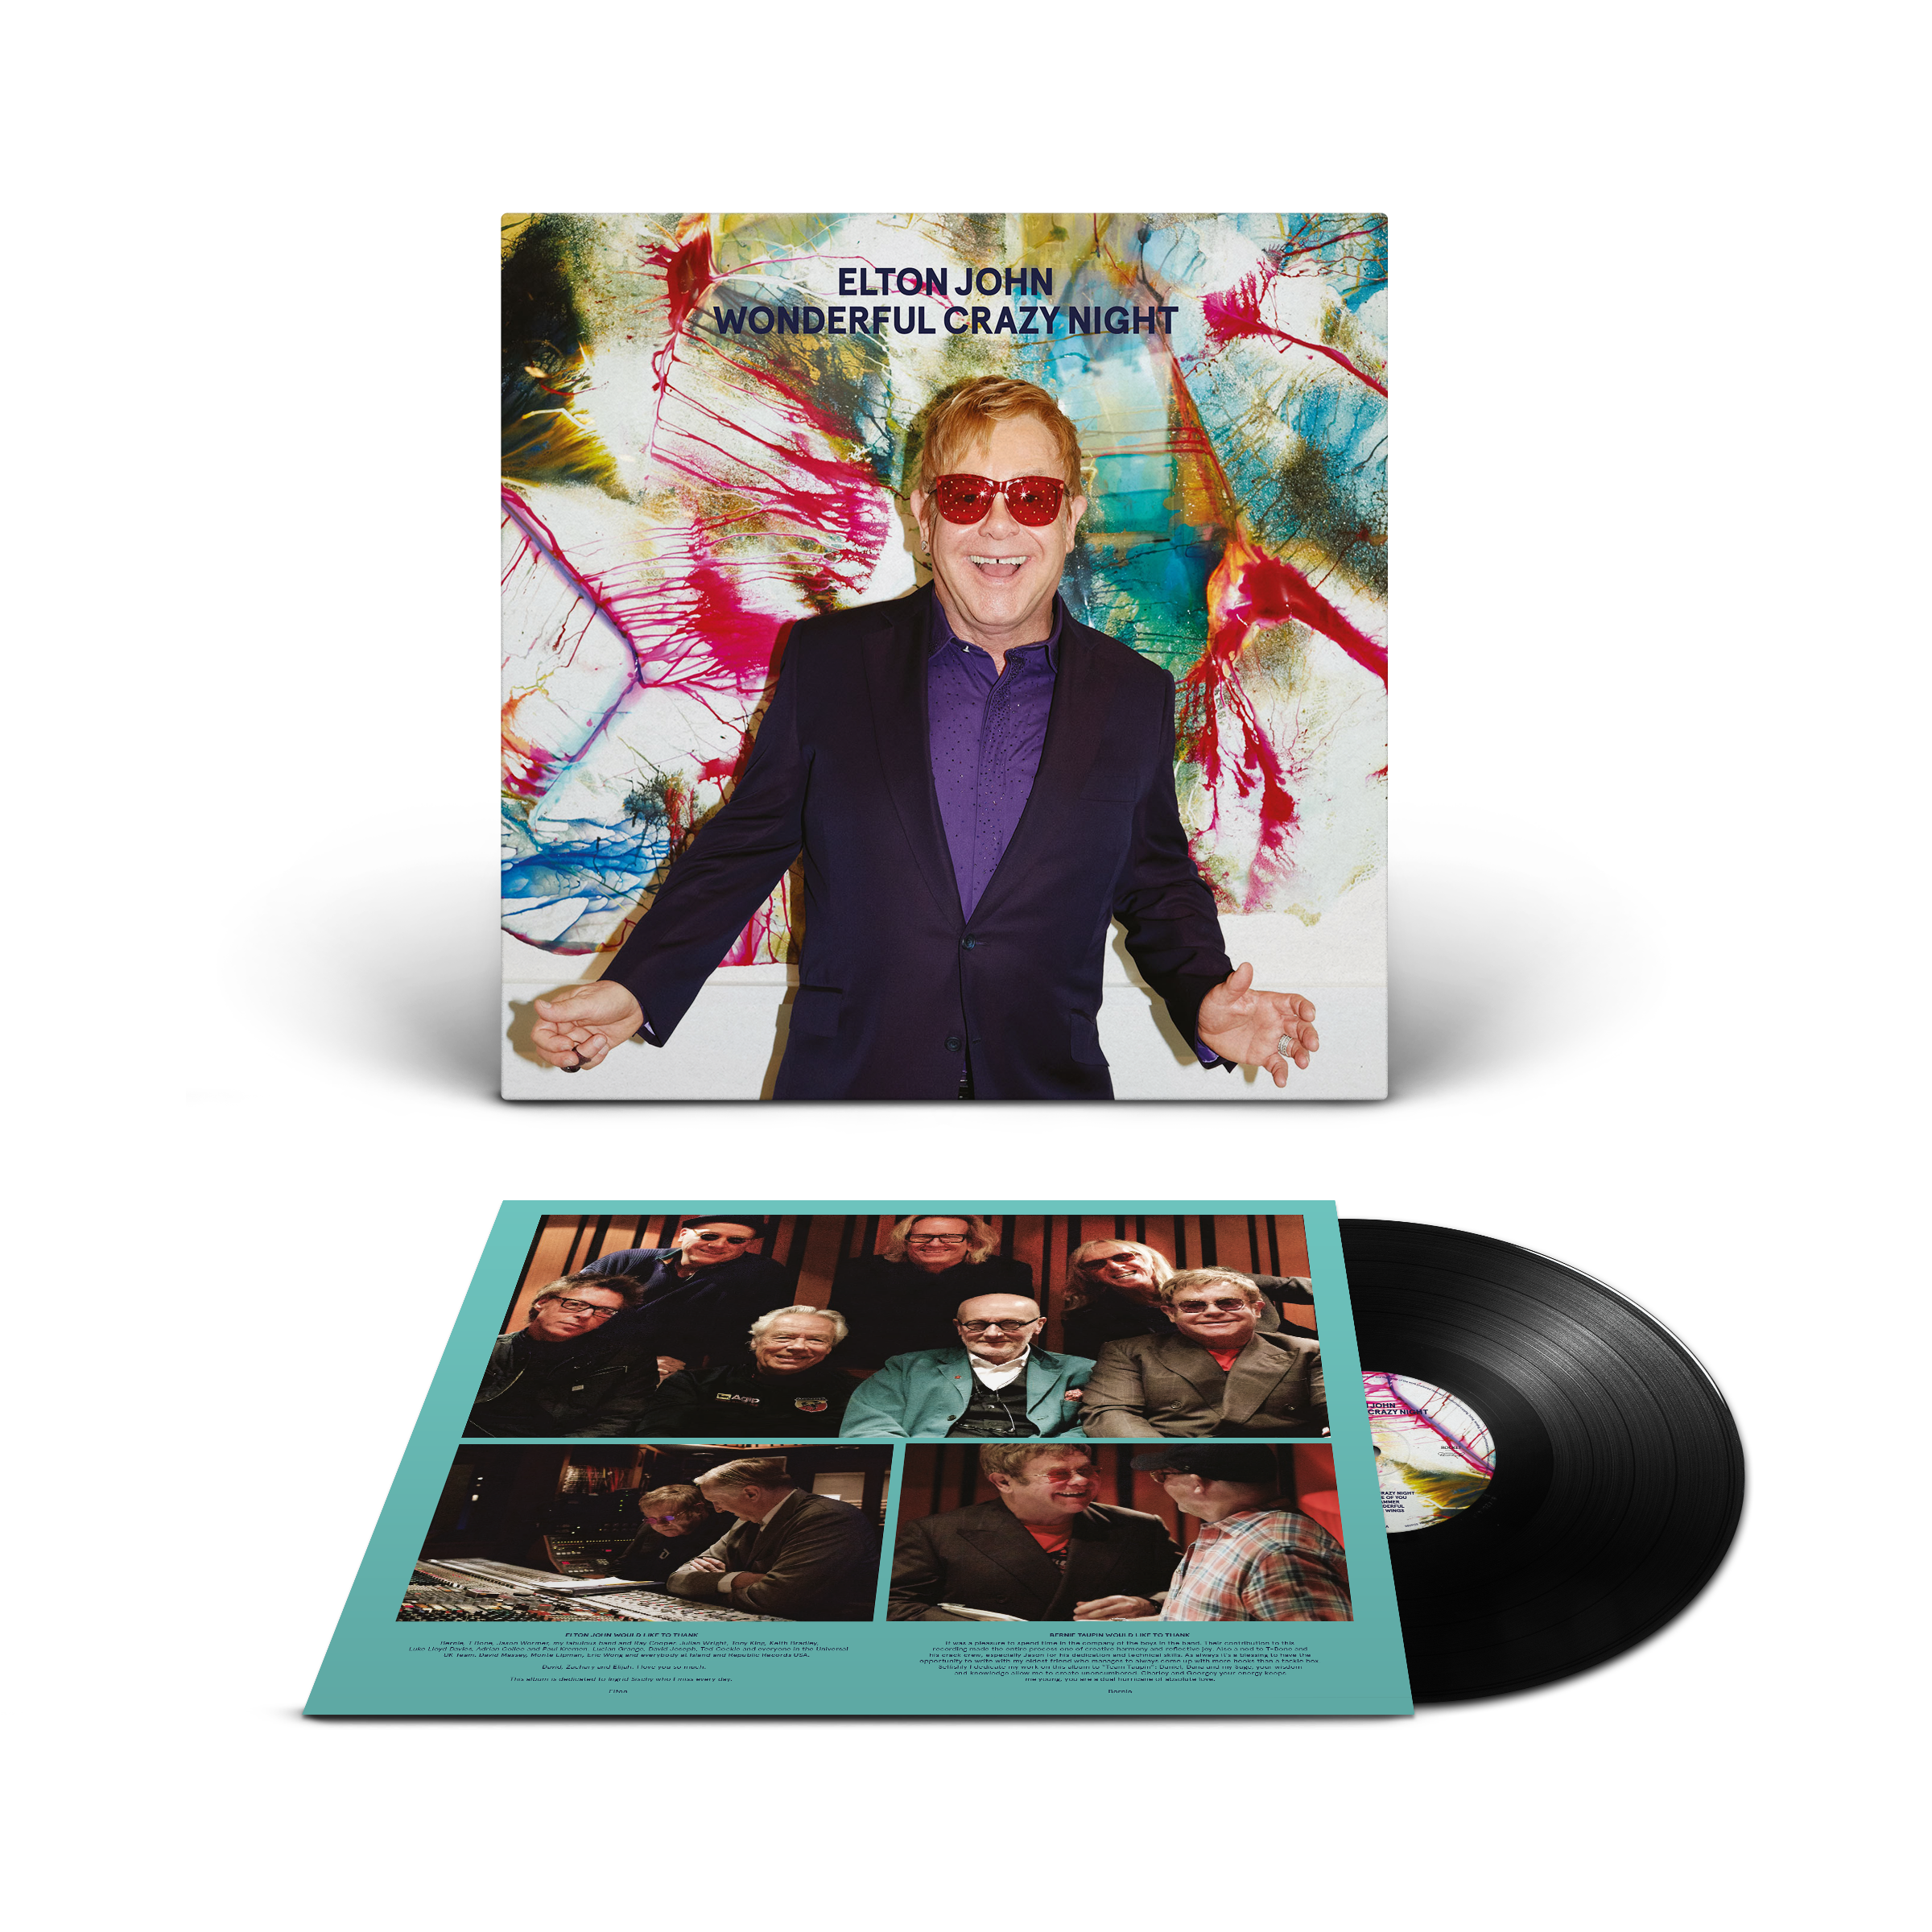 Elton John - Wonderful Crazy Night: Vinyl LP